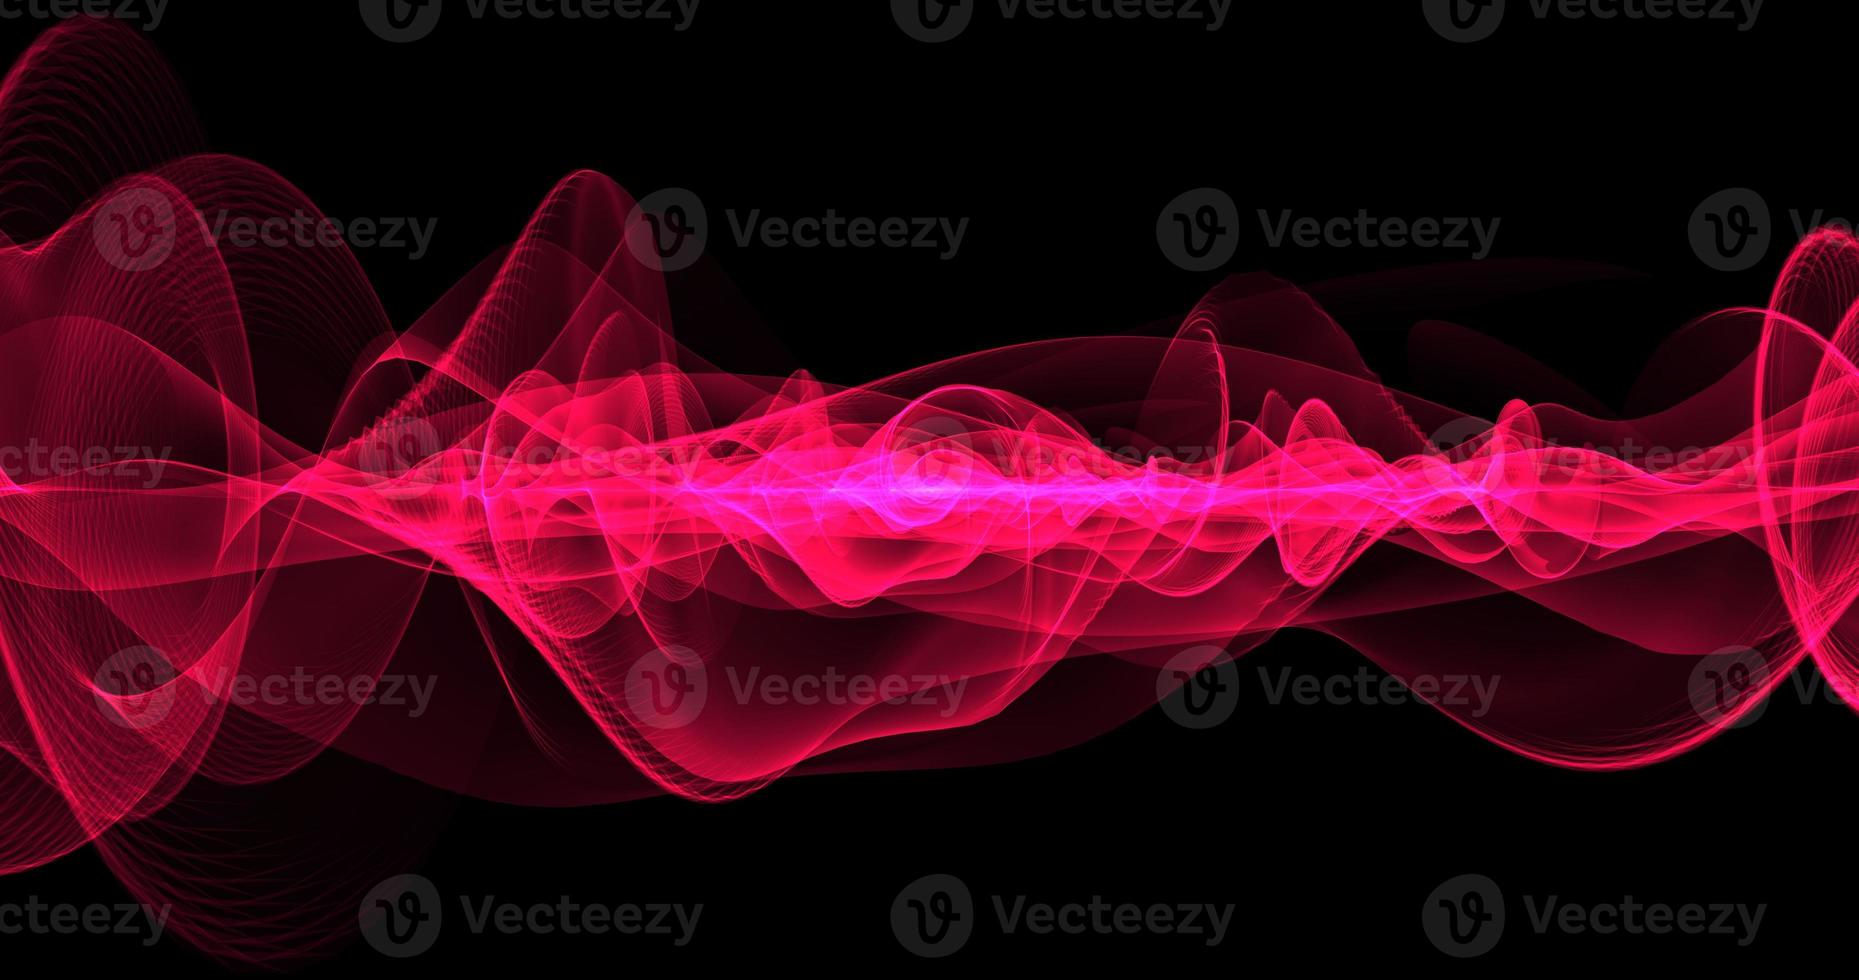 fondo abstracto. las líneas rojas y las ondas parecen energía mágica hermoso humo brillante en el espacio o la tela foto